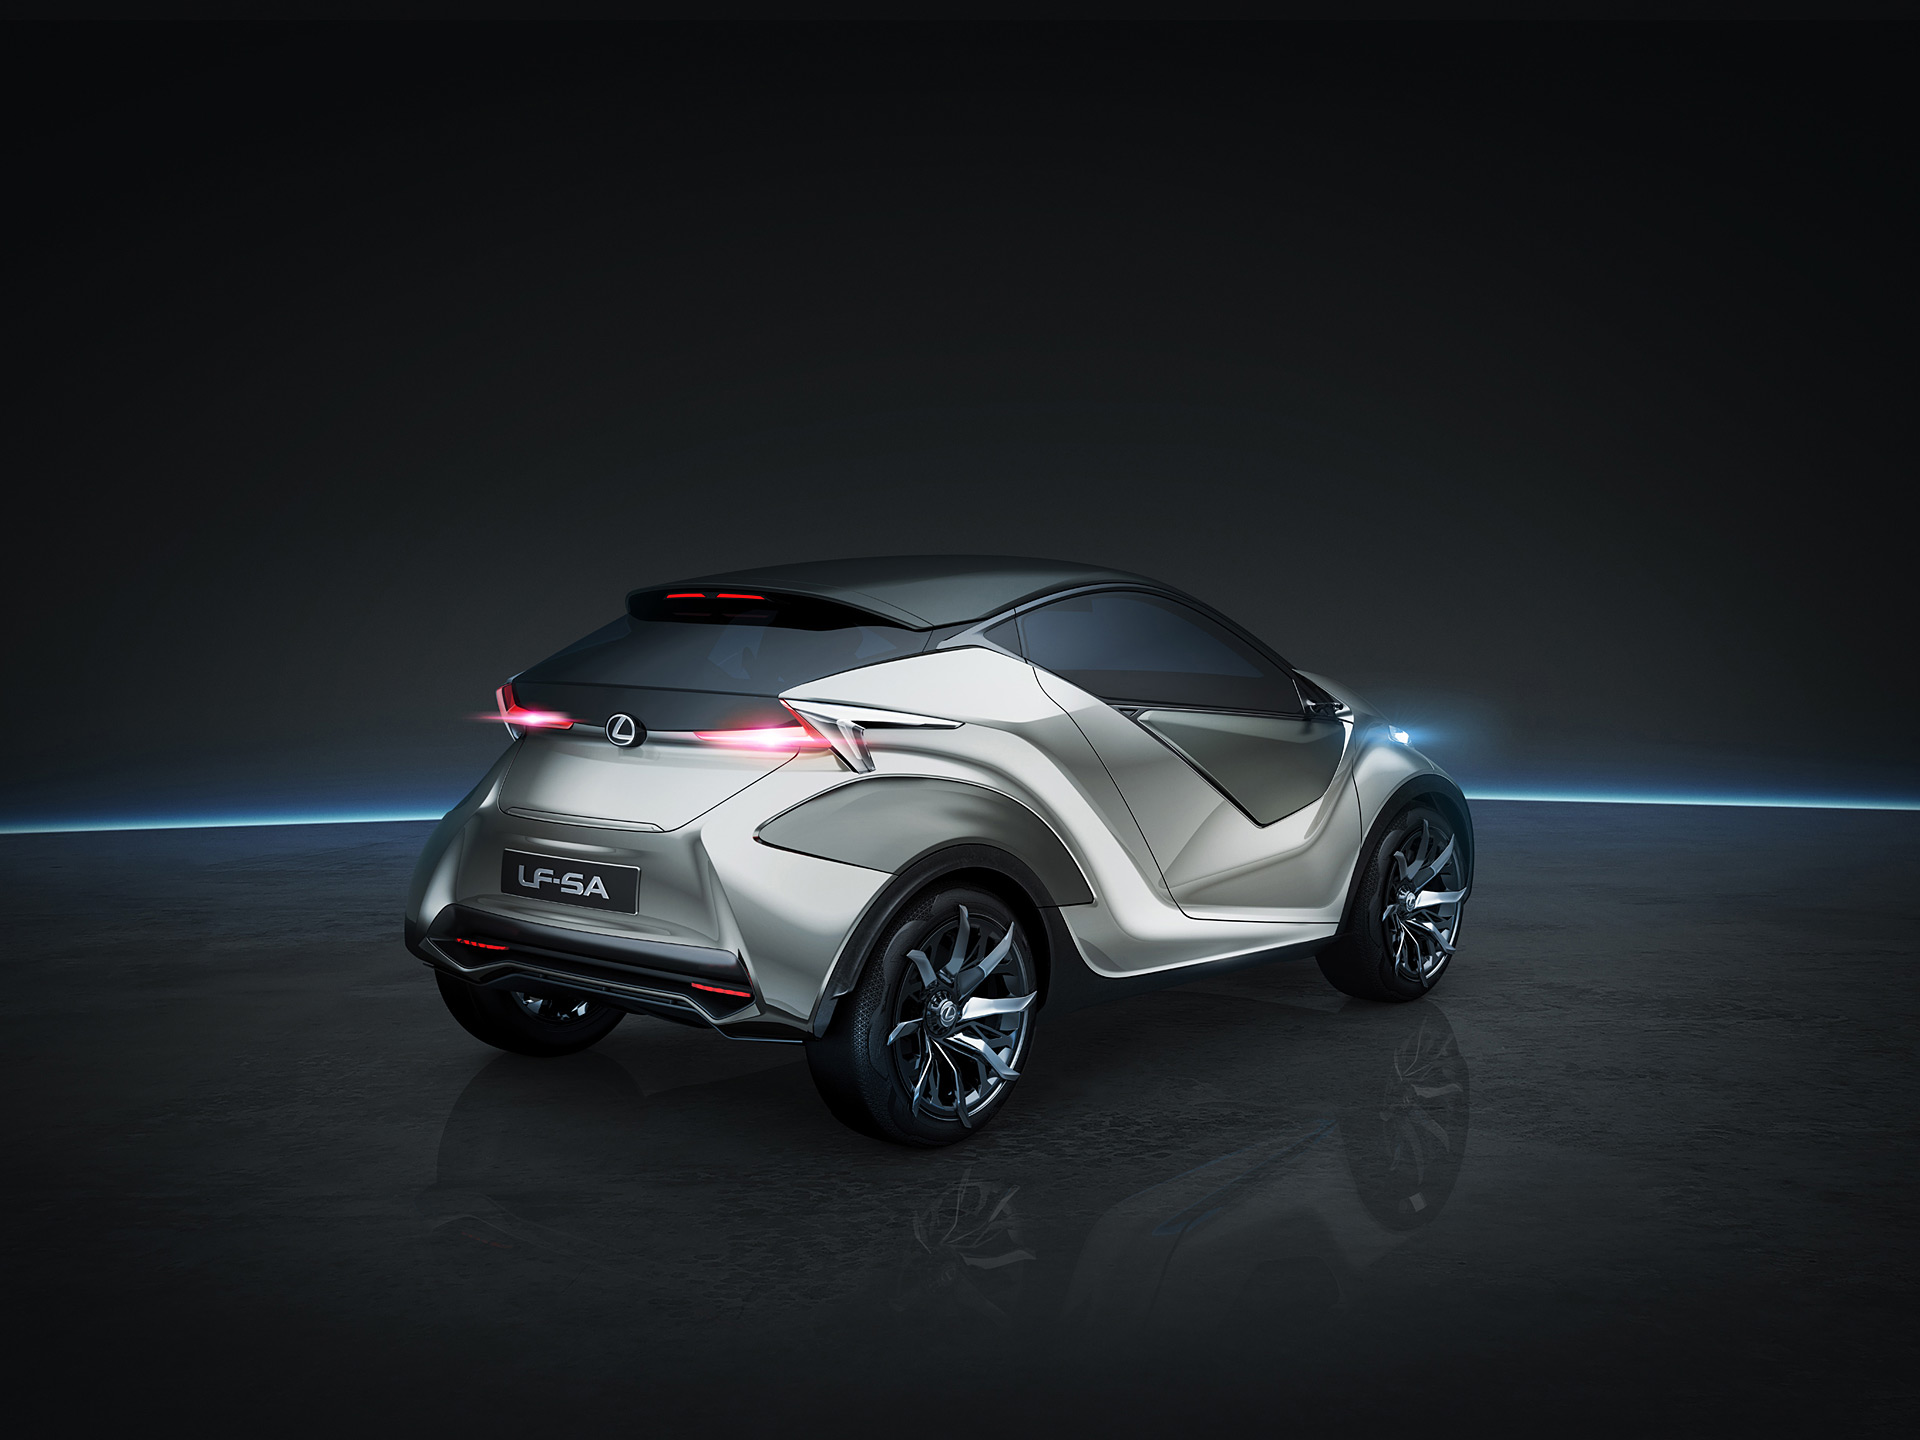  2015 Lexus LF-SA Concept Wallpaper.